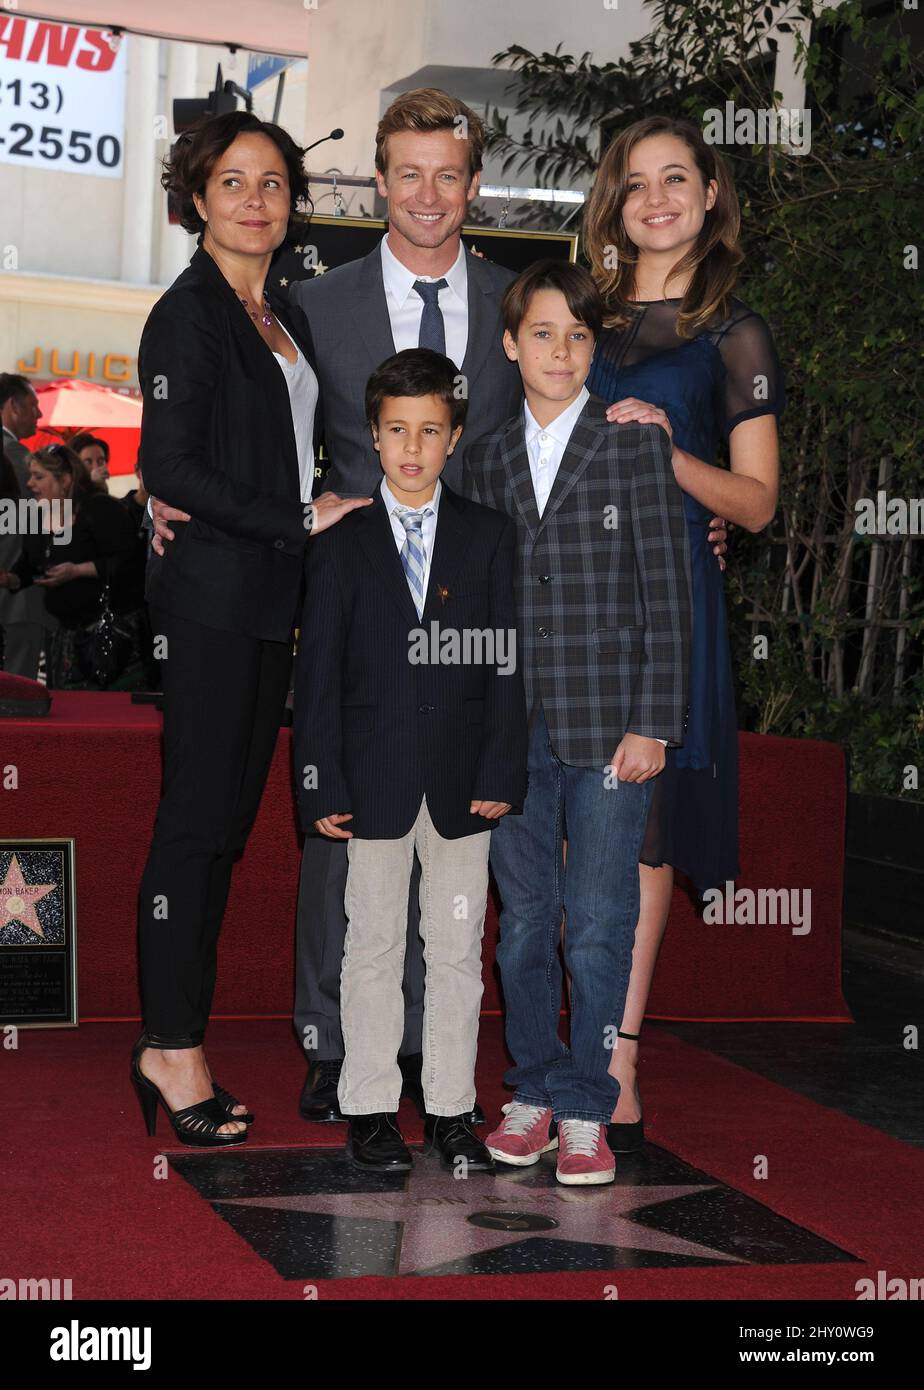 Rebecca Rigg, Simon Baker, su hija Stella Baker, sus hijos Claude Baker y Harry Baker Simon Baker fueron honrados con Star en el Paseo de la Fama de Hollywood Foto de stock